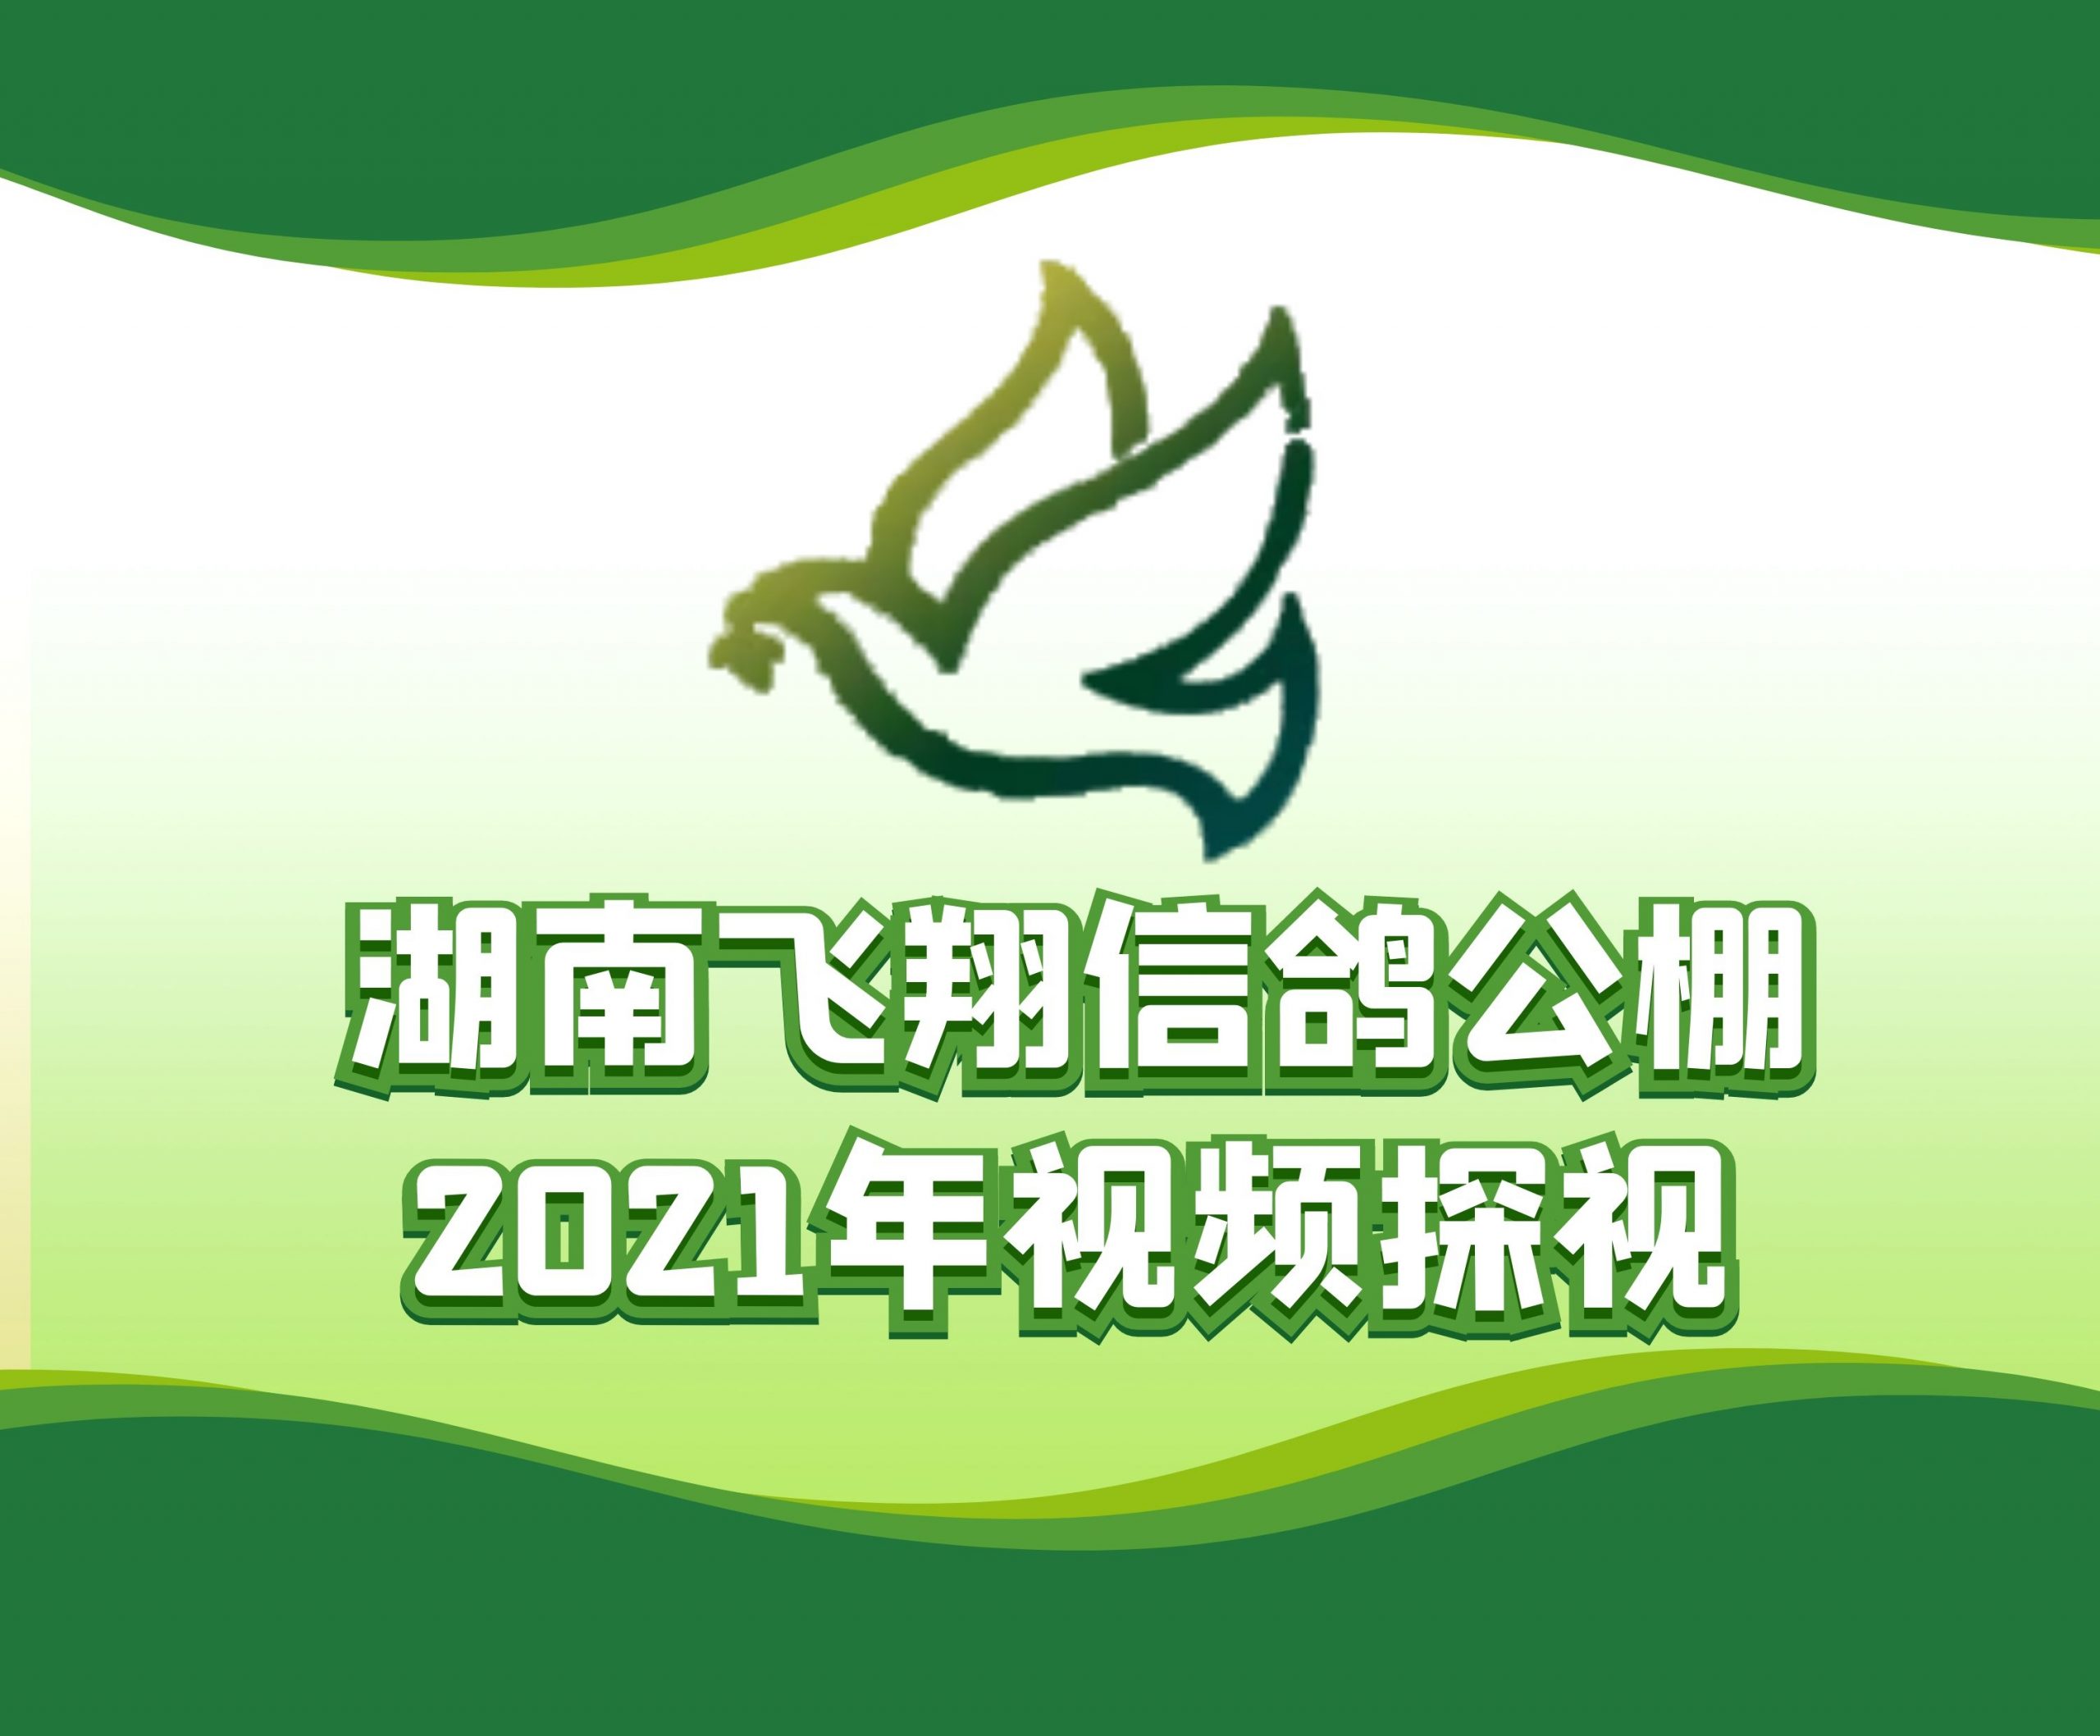 湘东明珠-熊保湘-2021-17-0353365